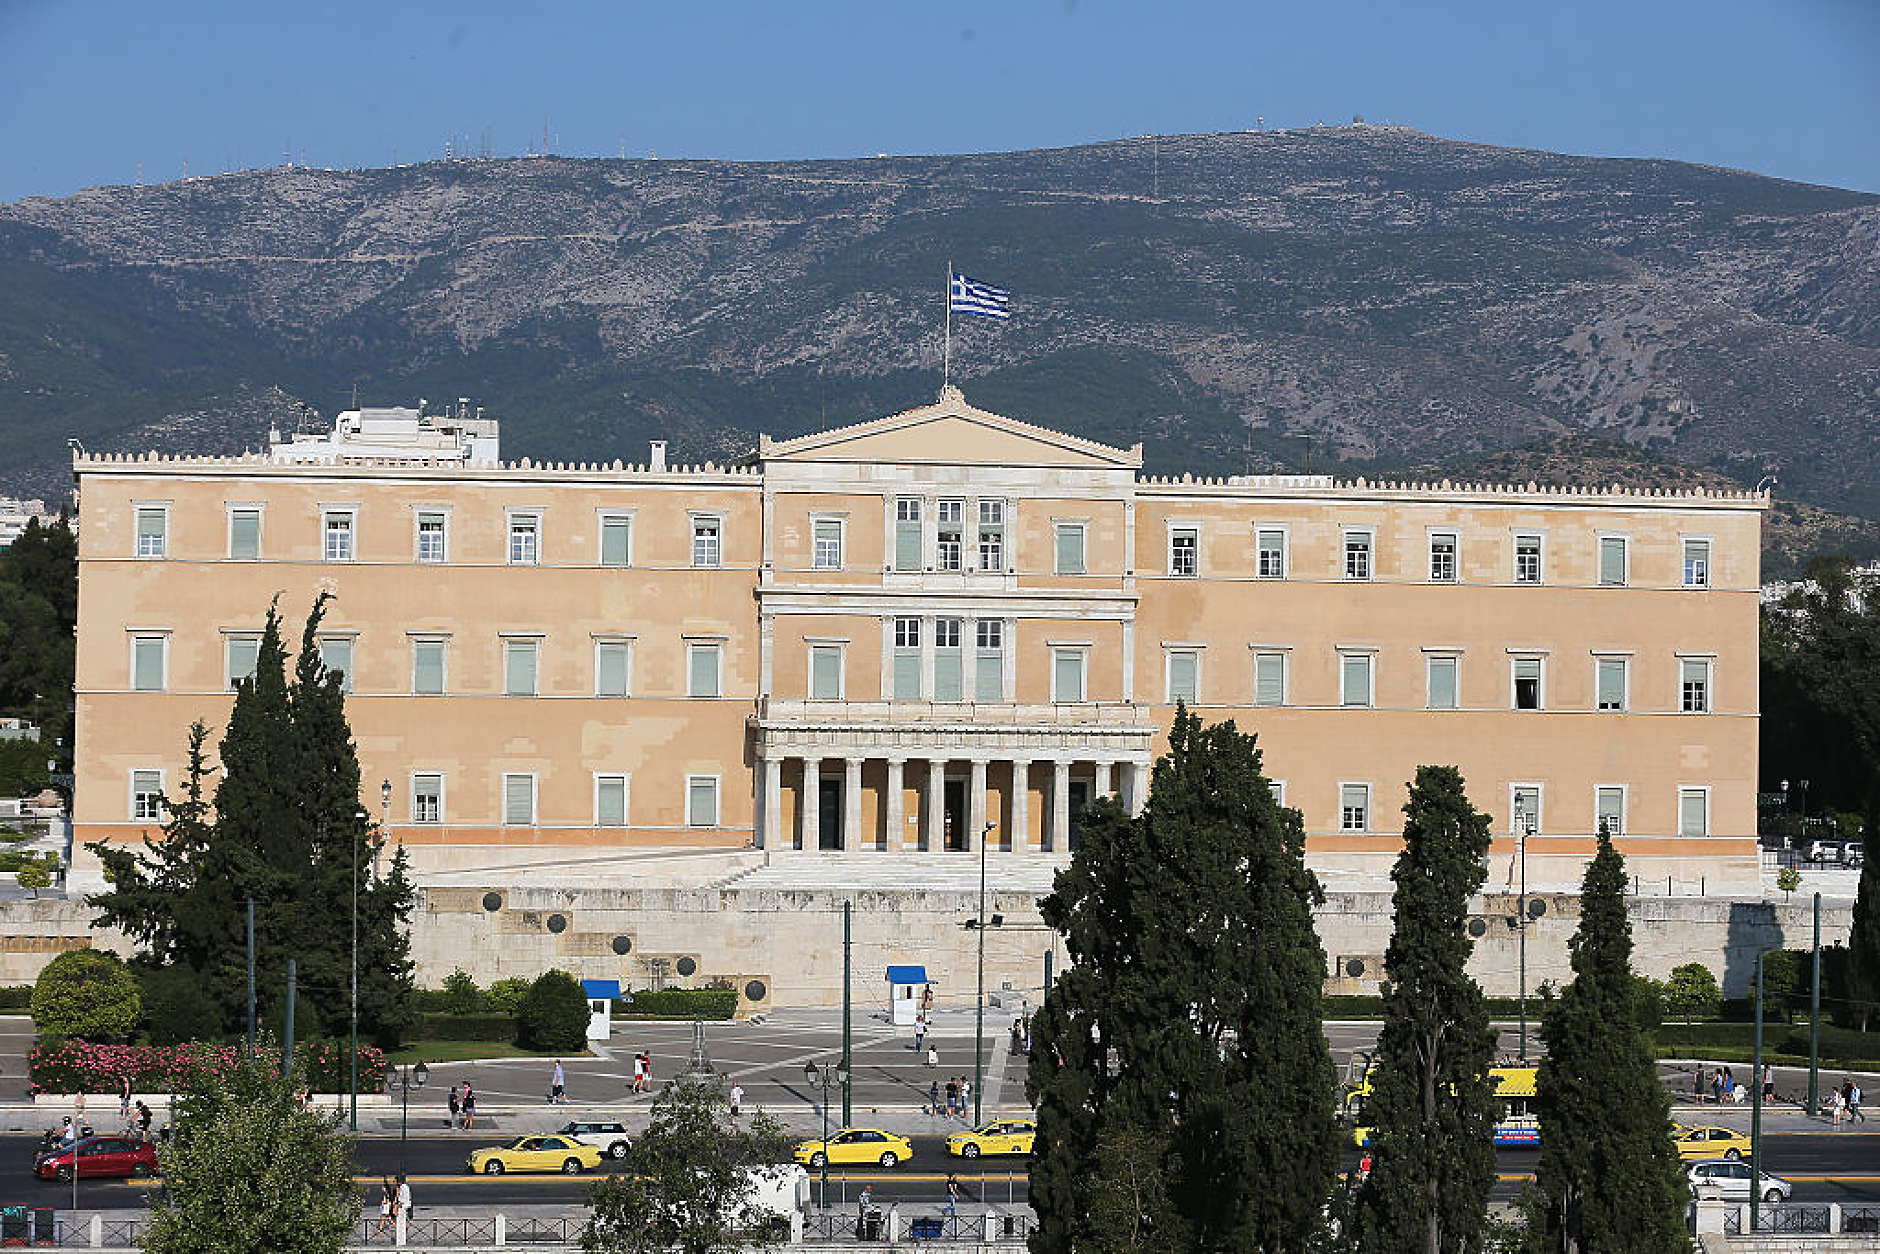 Гърция възнамерява да изплати предсрочно 5,29 млрд. евро от спасителните заеми на страната